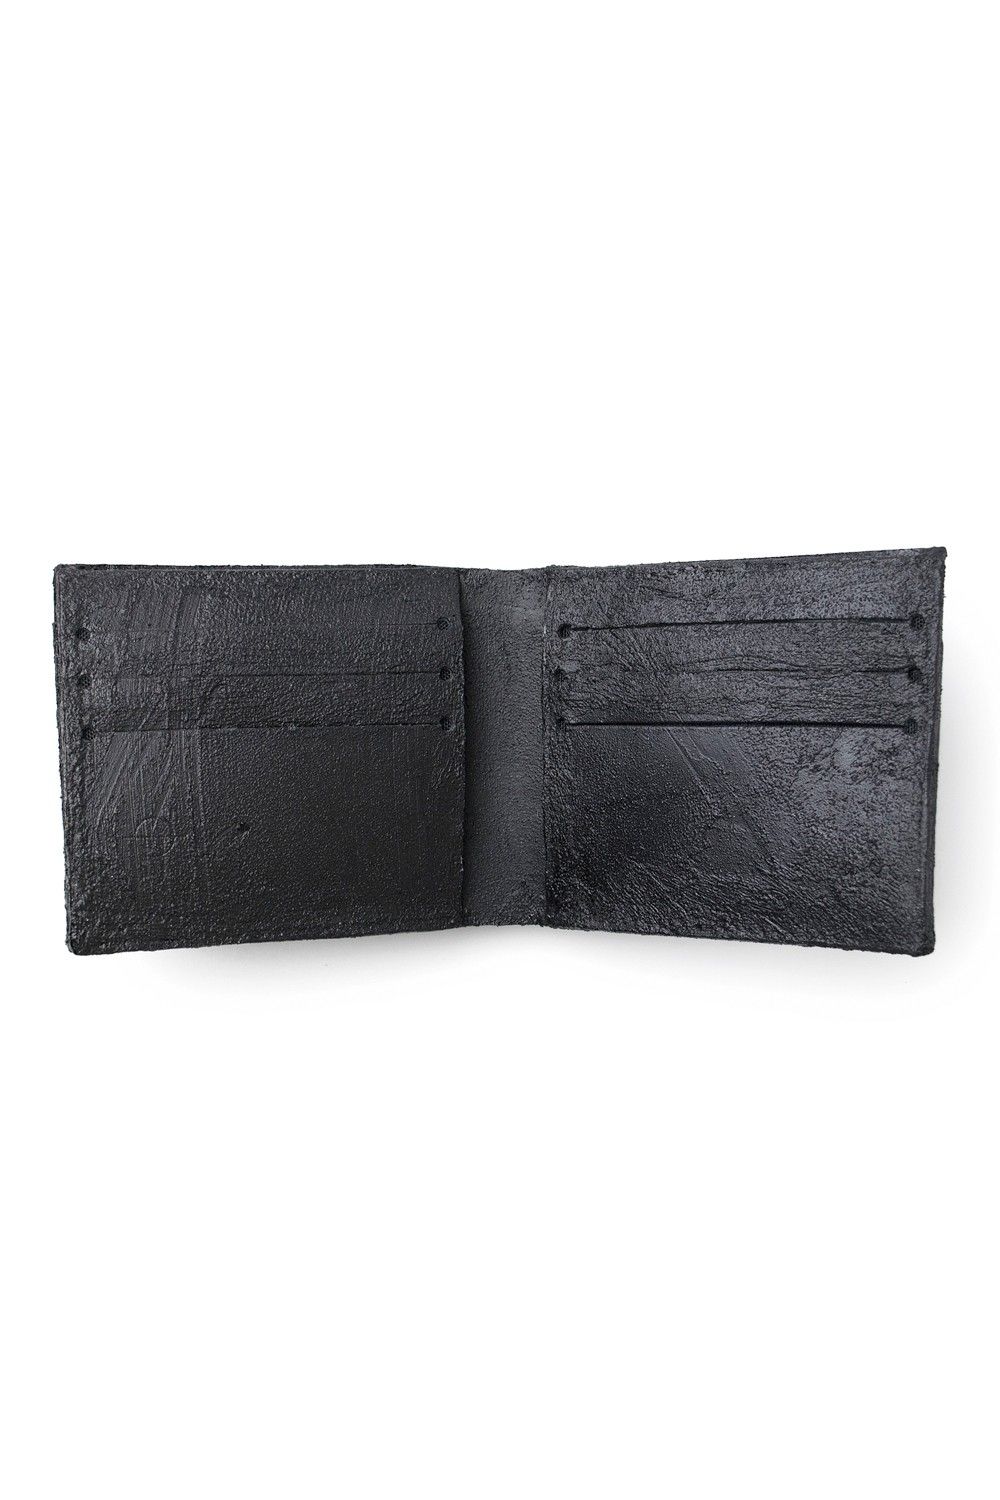 KAGARI YUSUKE - 【お取り寄せ可能】二つ折り財布 [黒い壁] / mw06-bk 